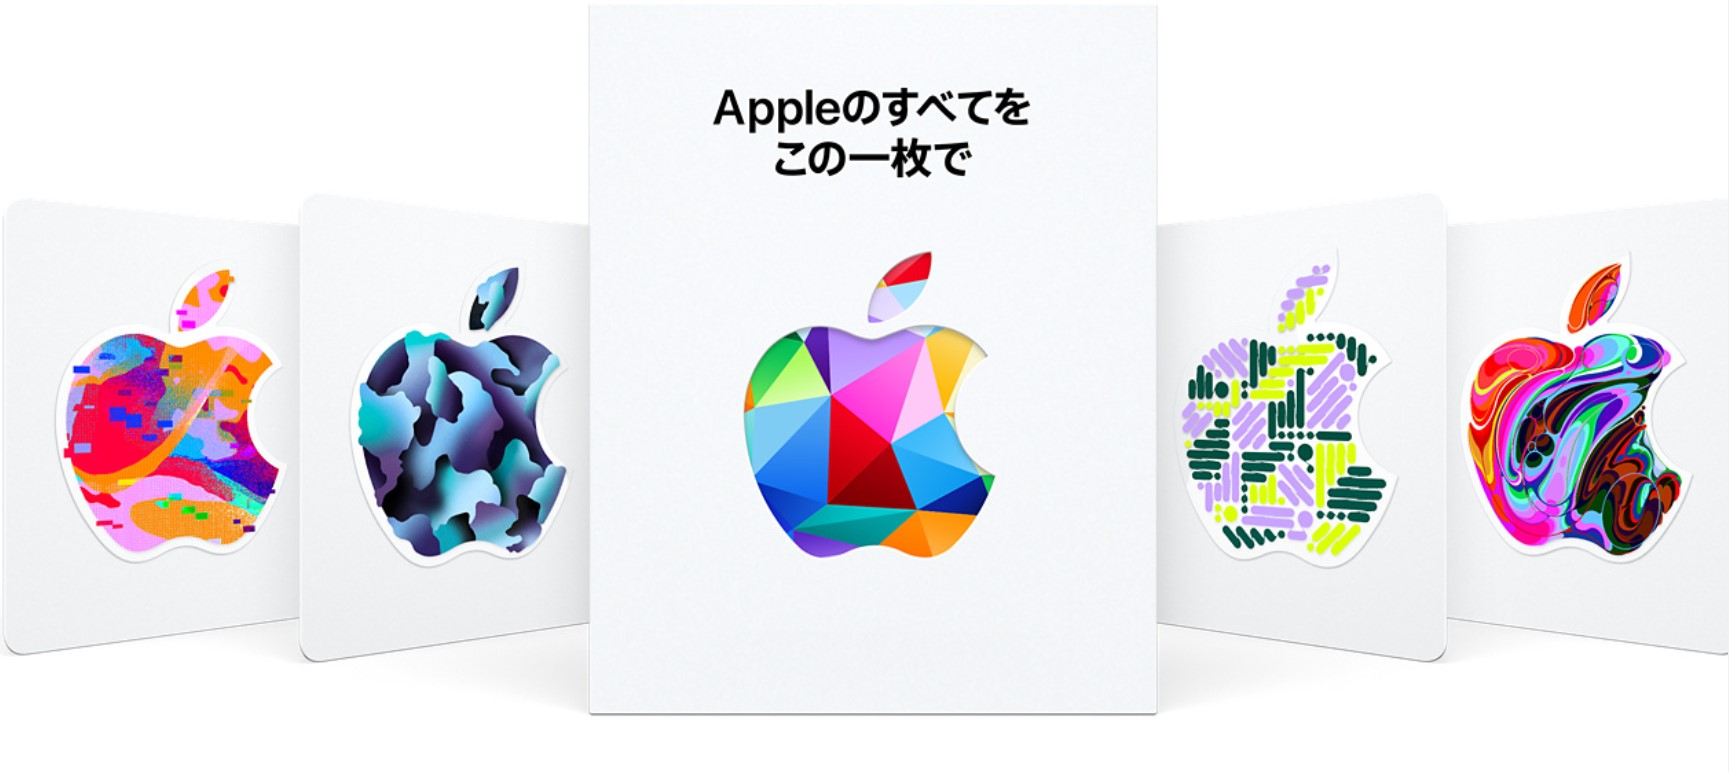 アップル、物理製品でもアプリ購入にも使える「Appleギフトカード」を販売開始